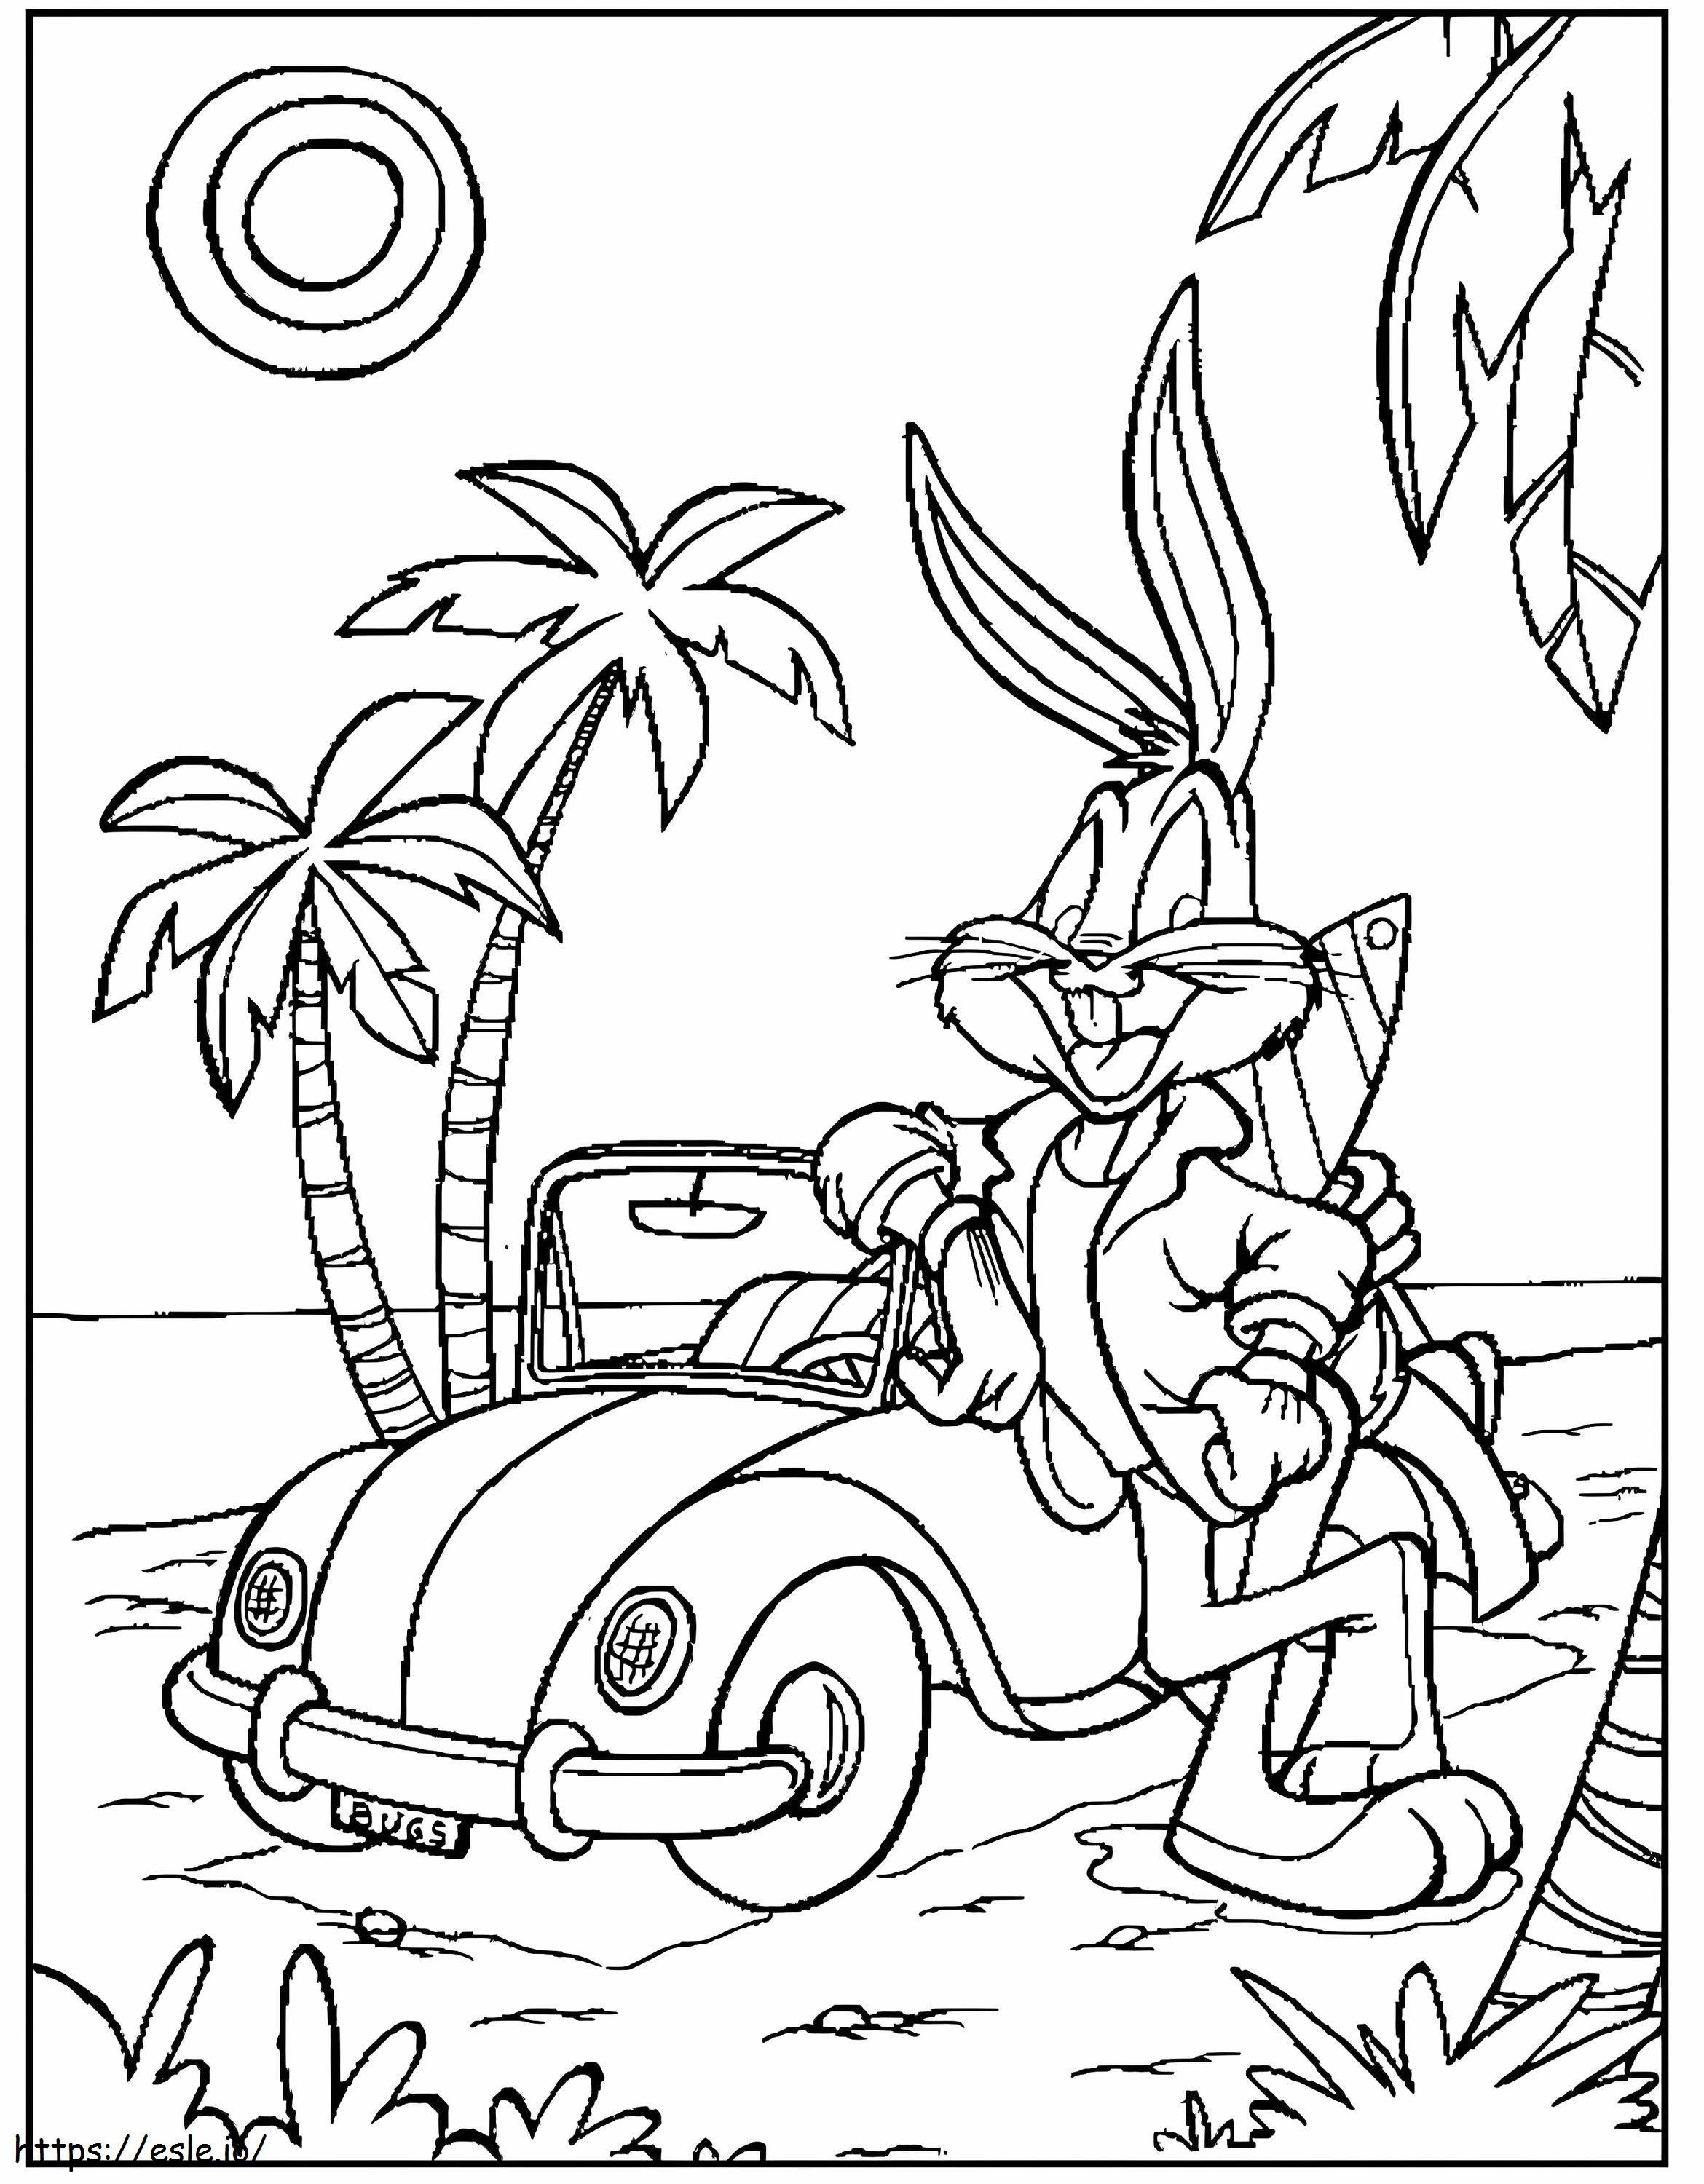 Bugs Bunny con auto sulla spiaggia da colorare